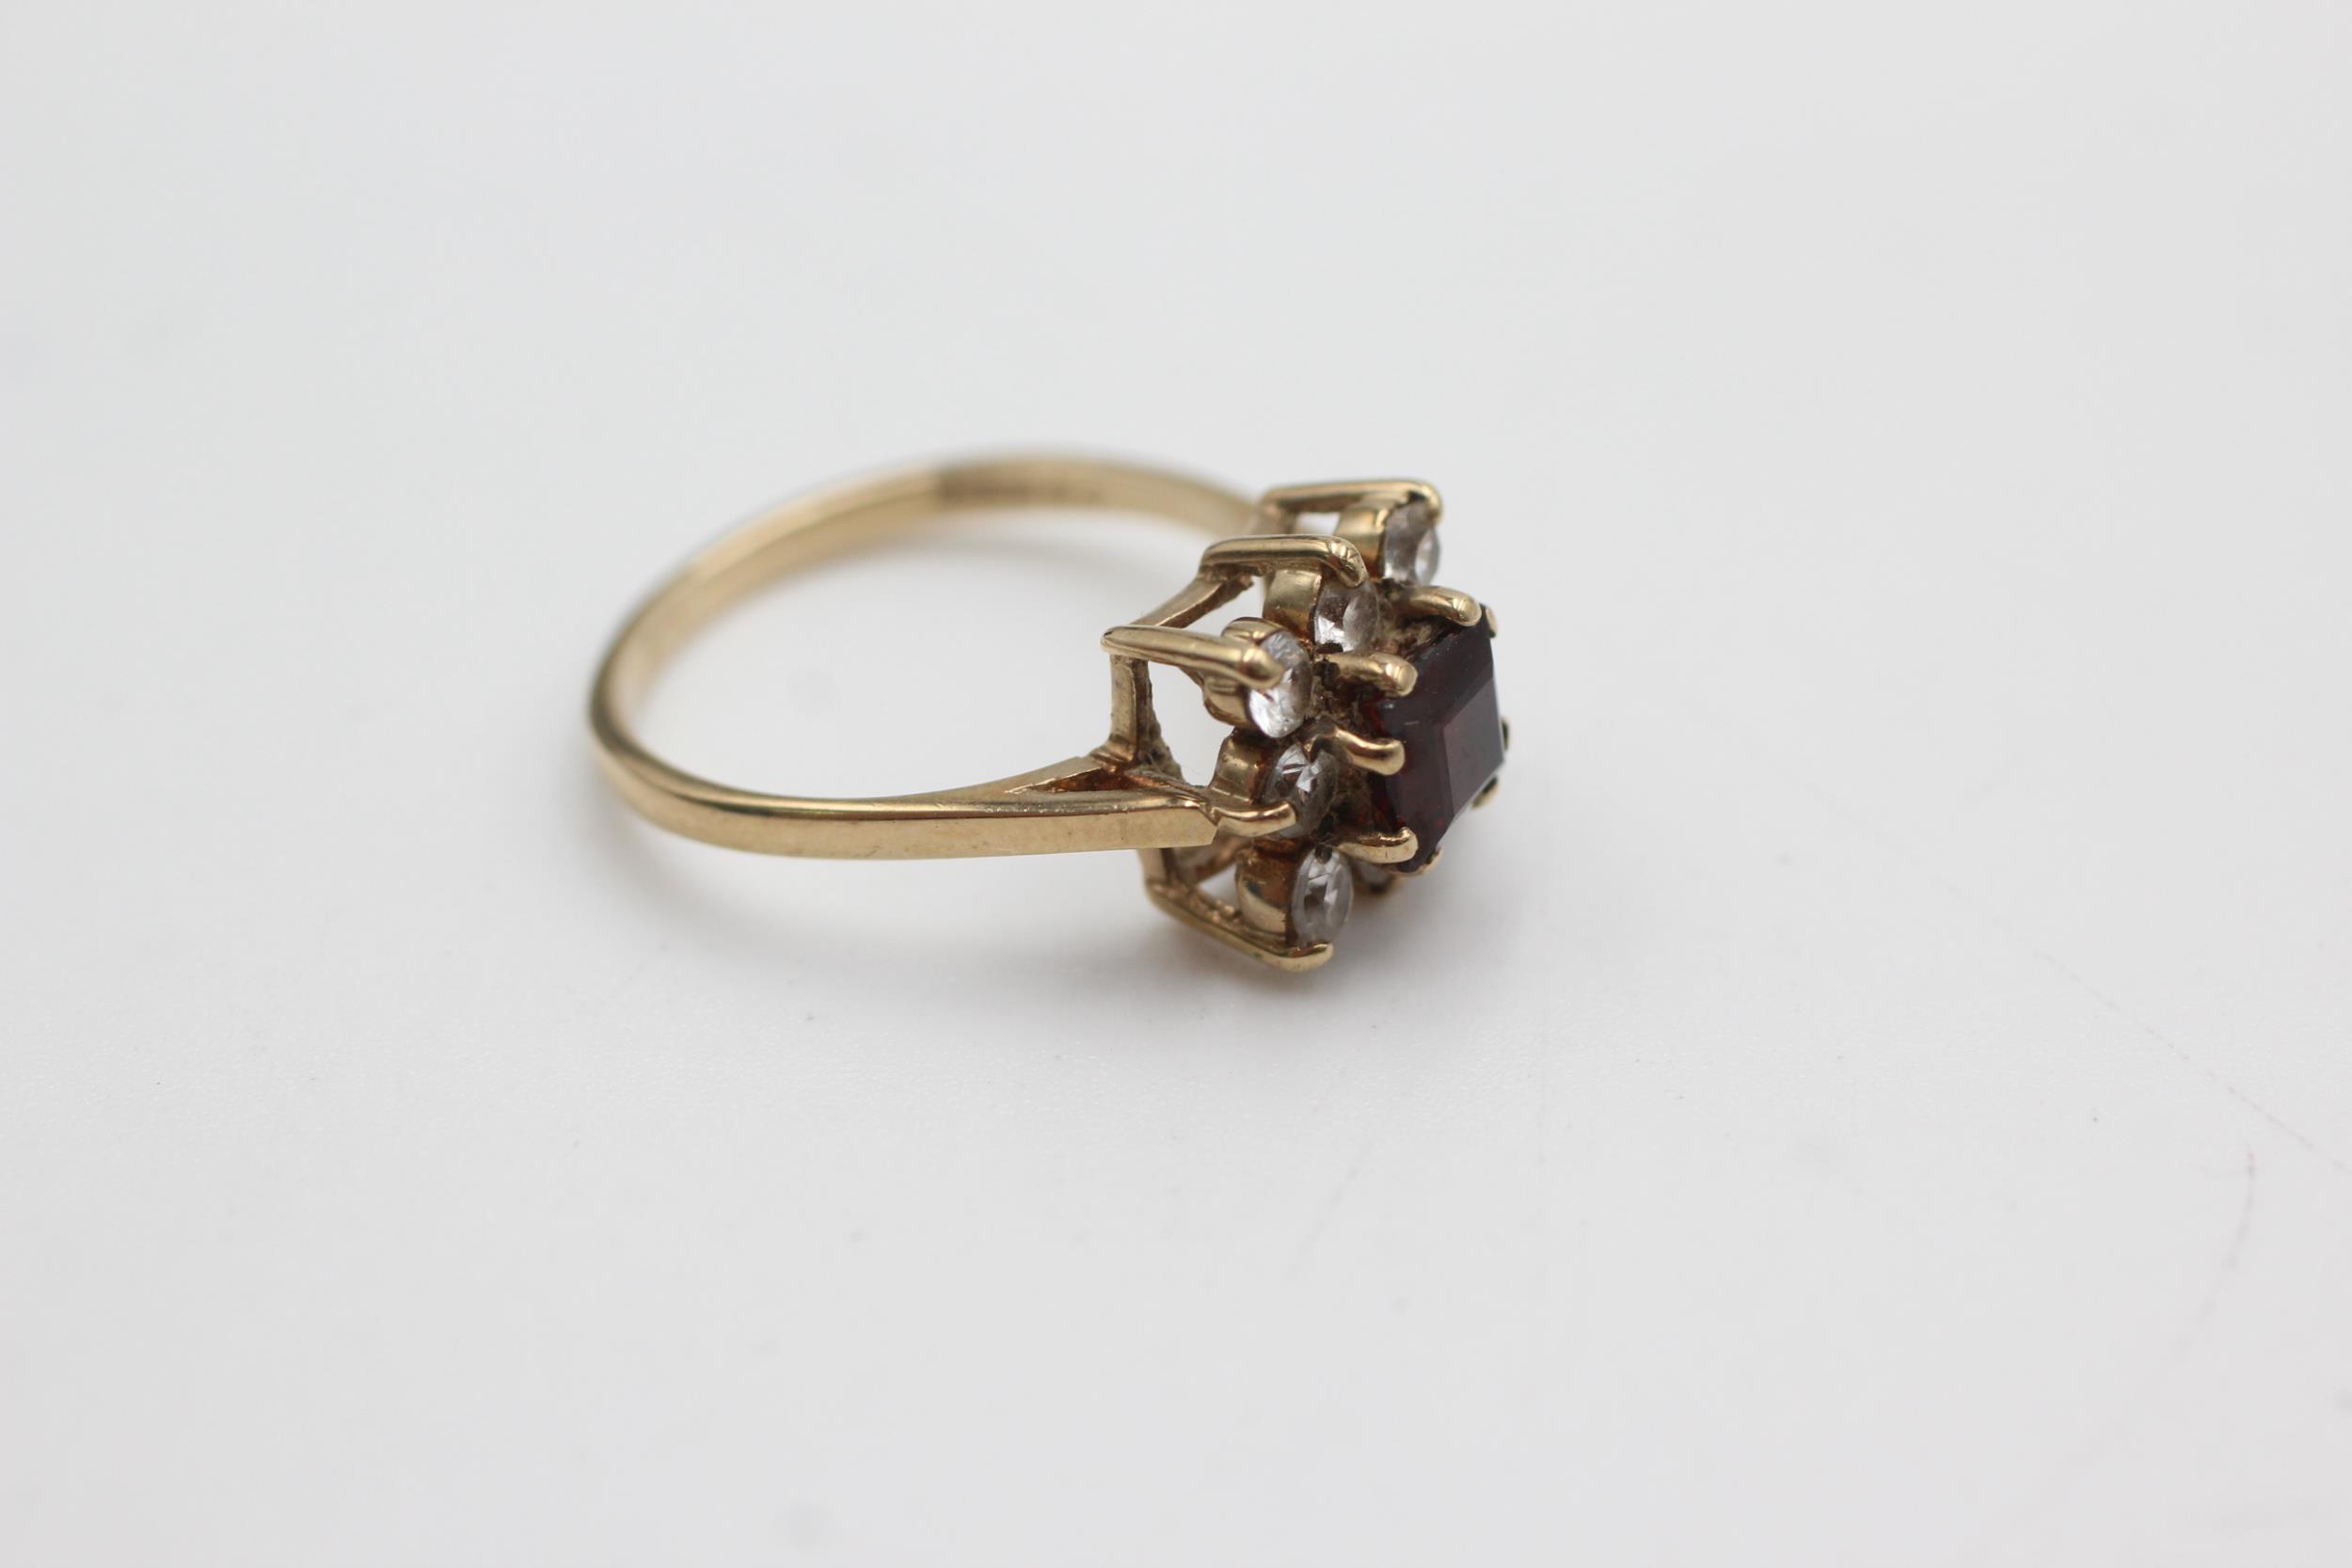 9ct gold vintage garnet & clear gemstone square cluster ring (2.5g) - Image 2 of 4